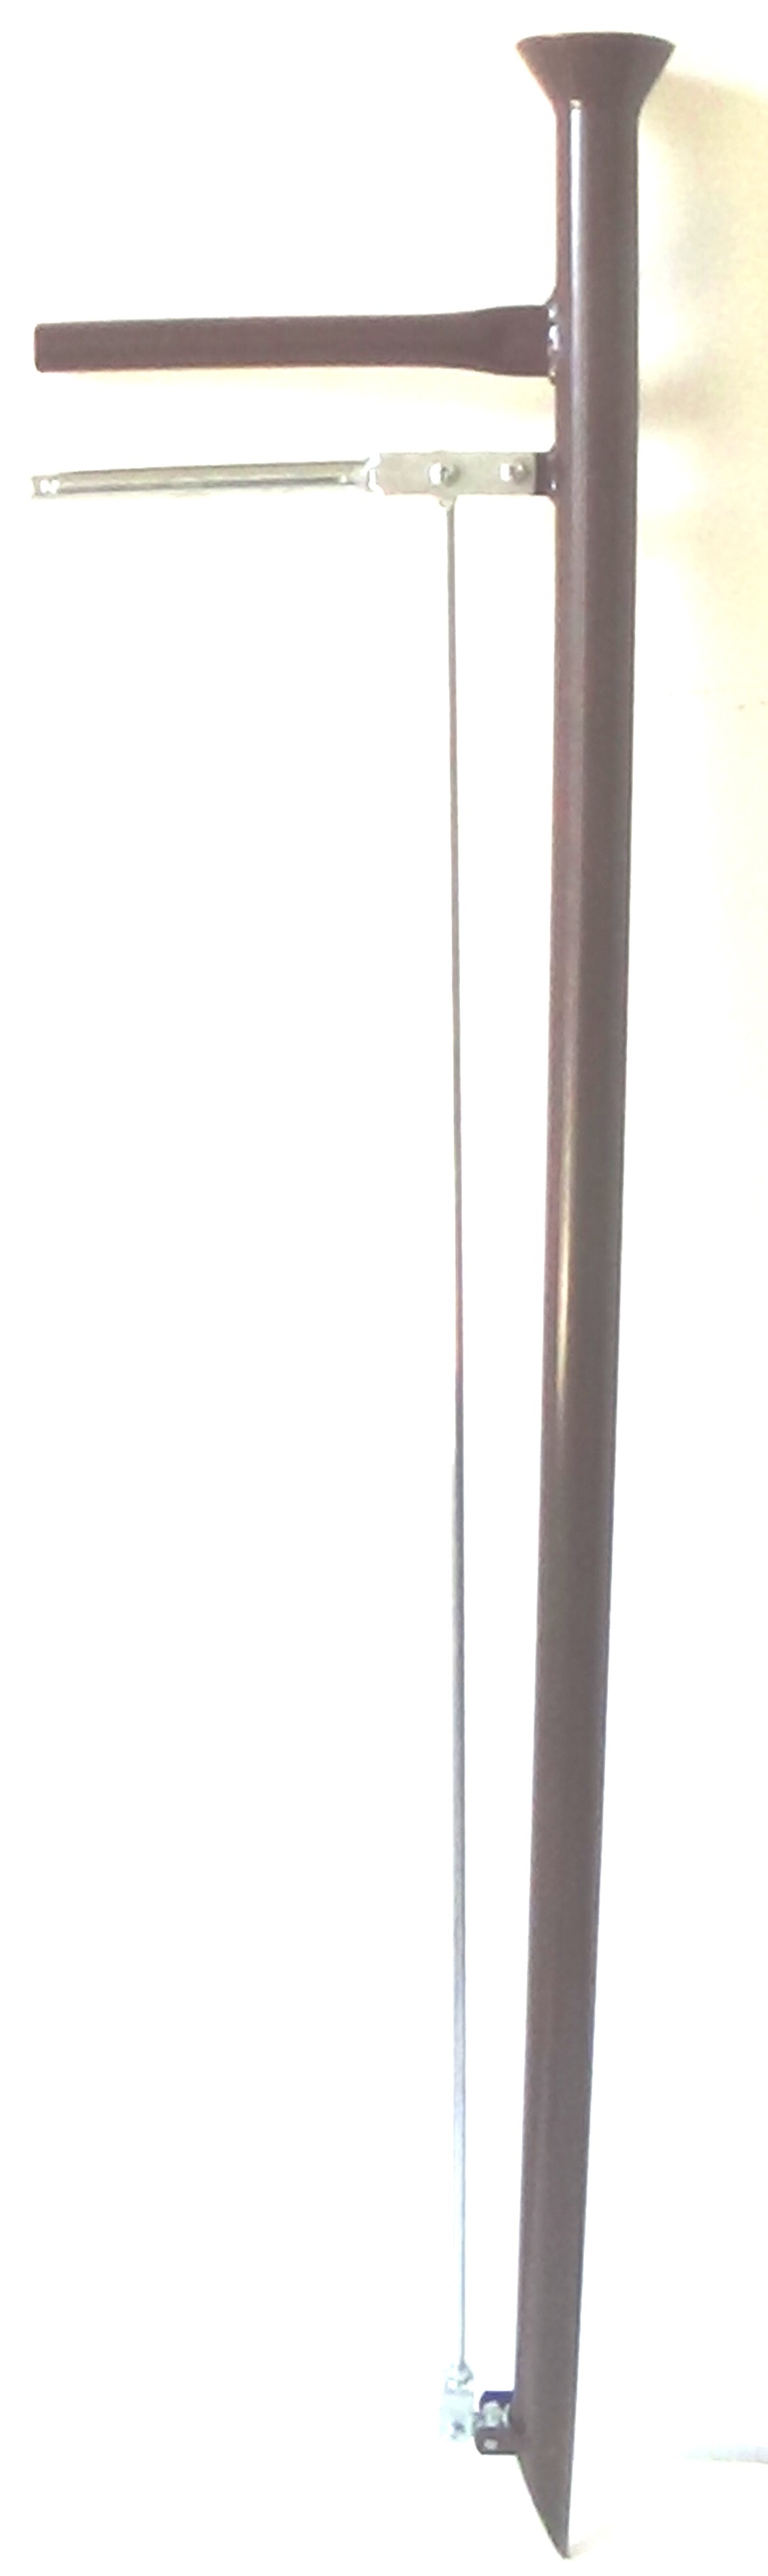 Kézi vetőcső (35 mm)